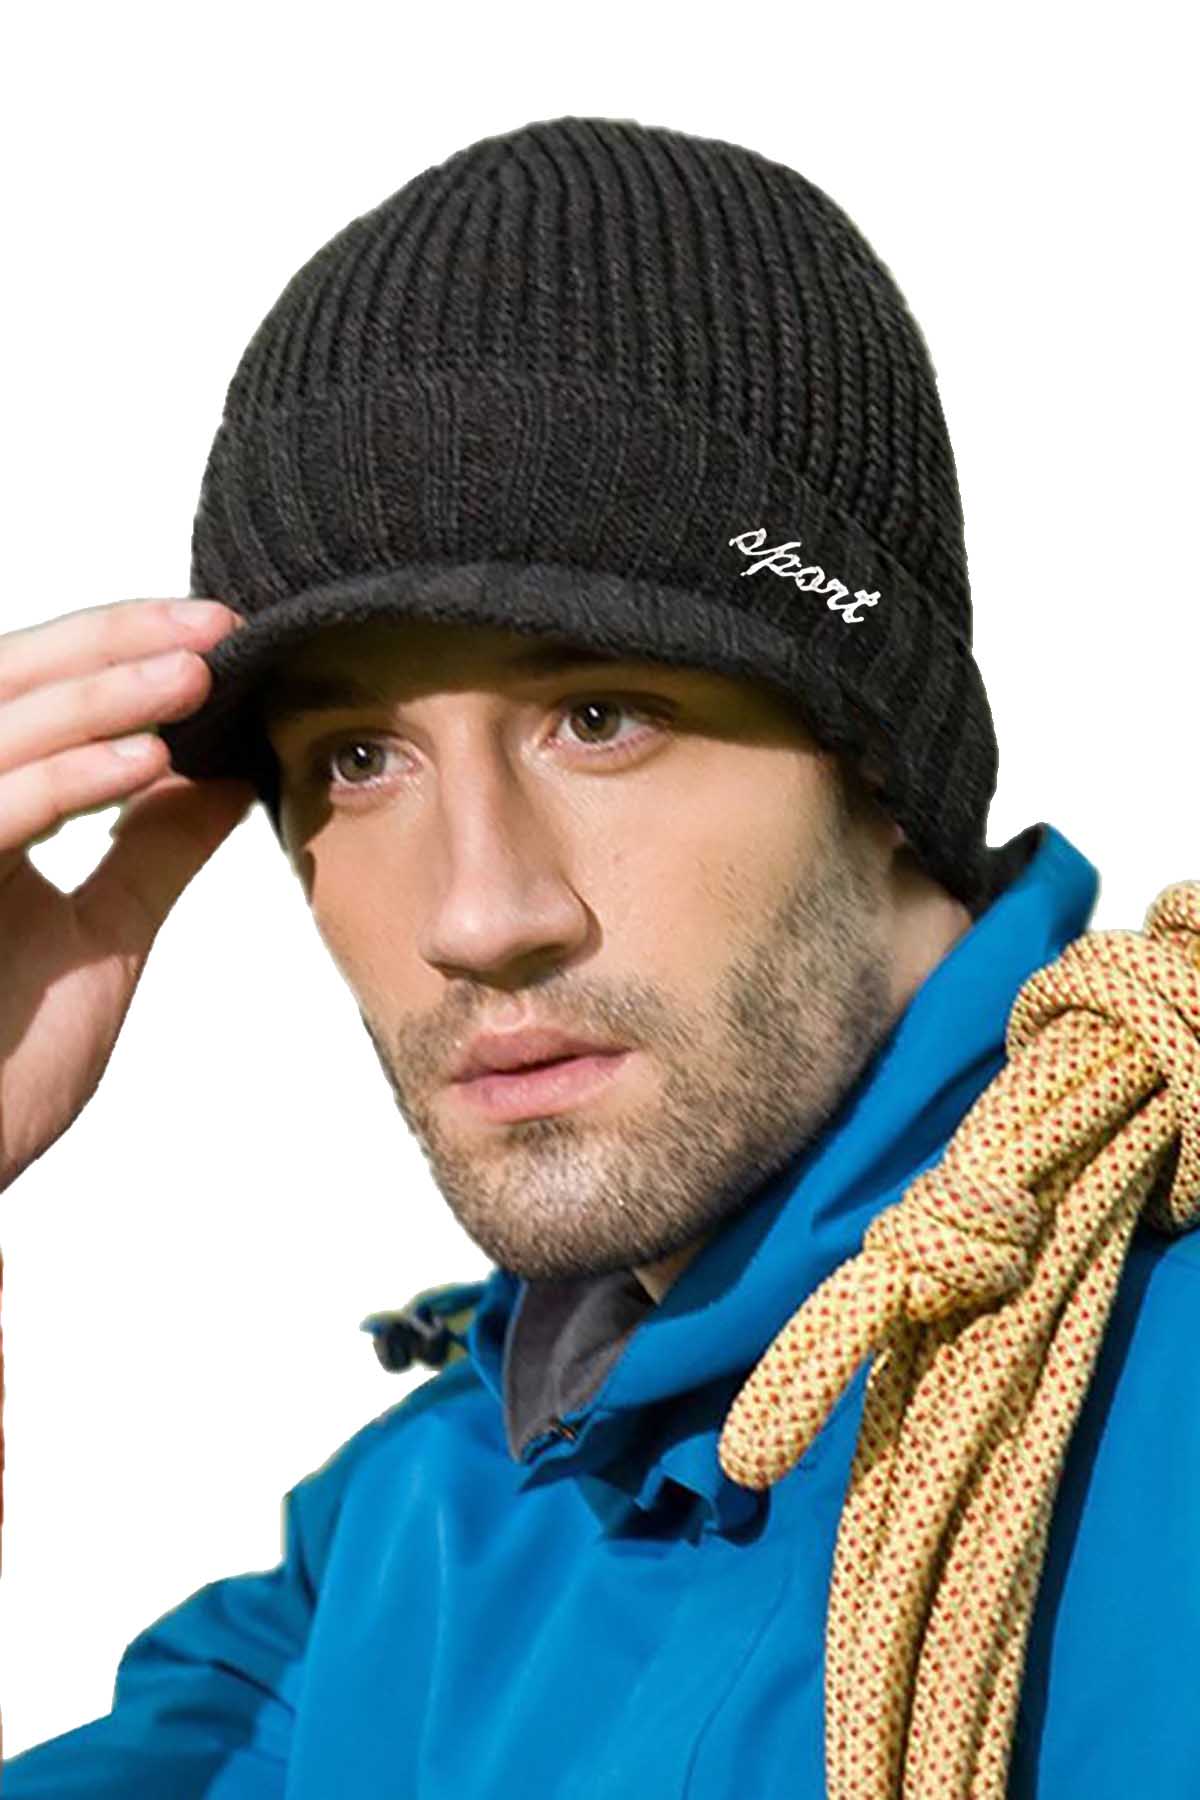 Sport All Black Knit Fleece Lined Hat & Scarf 2-Piece Set